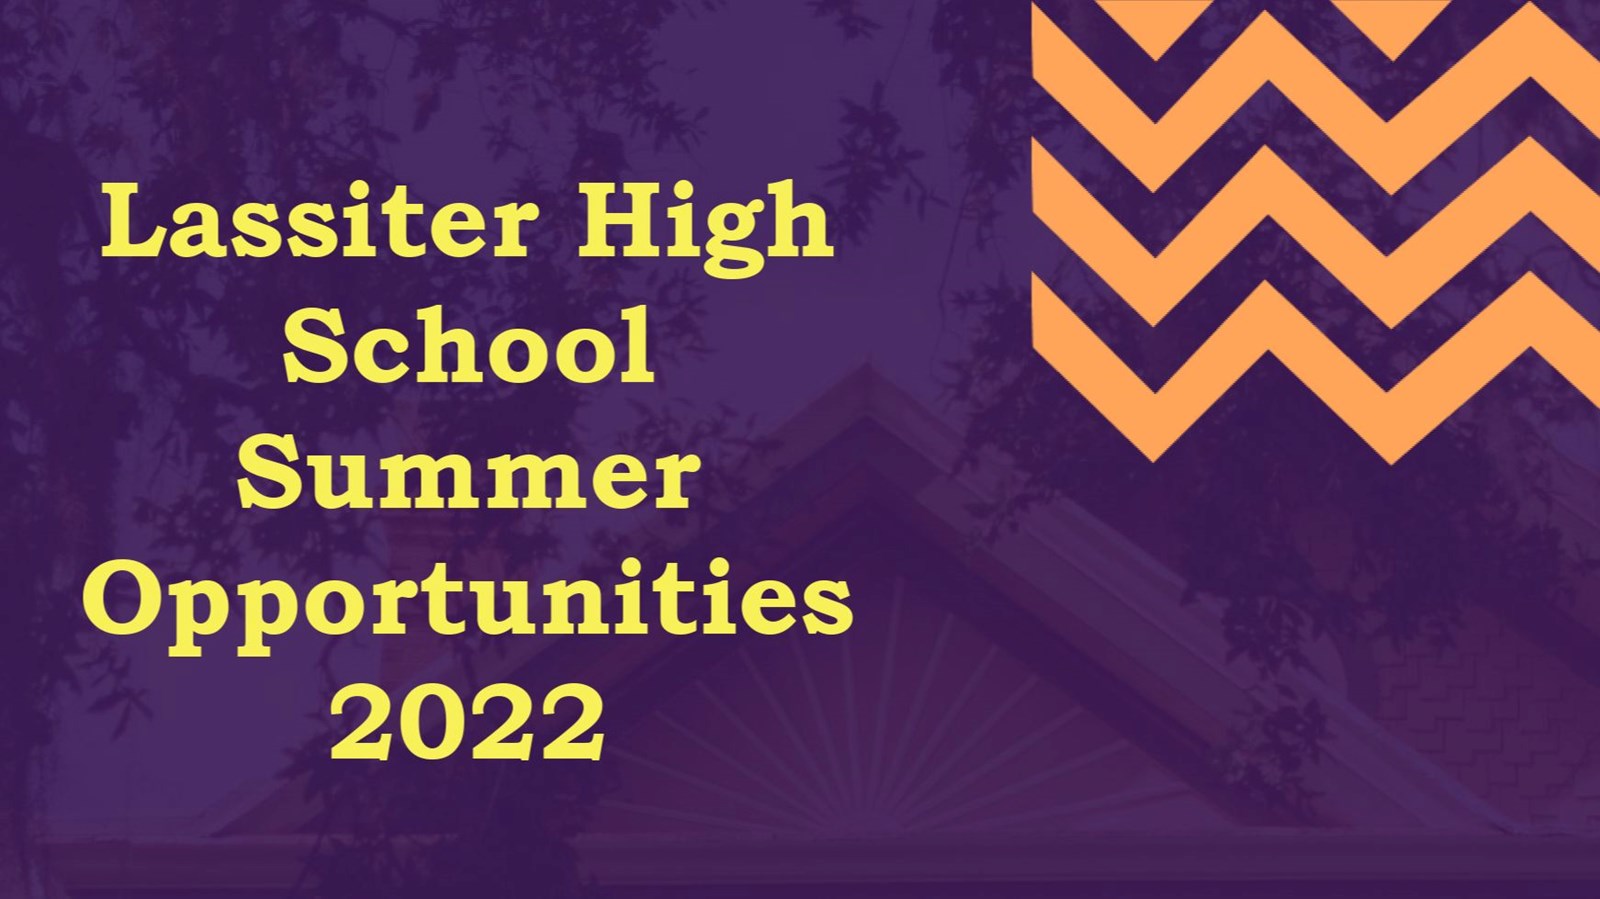 LHS Summer Opportunities